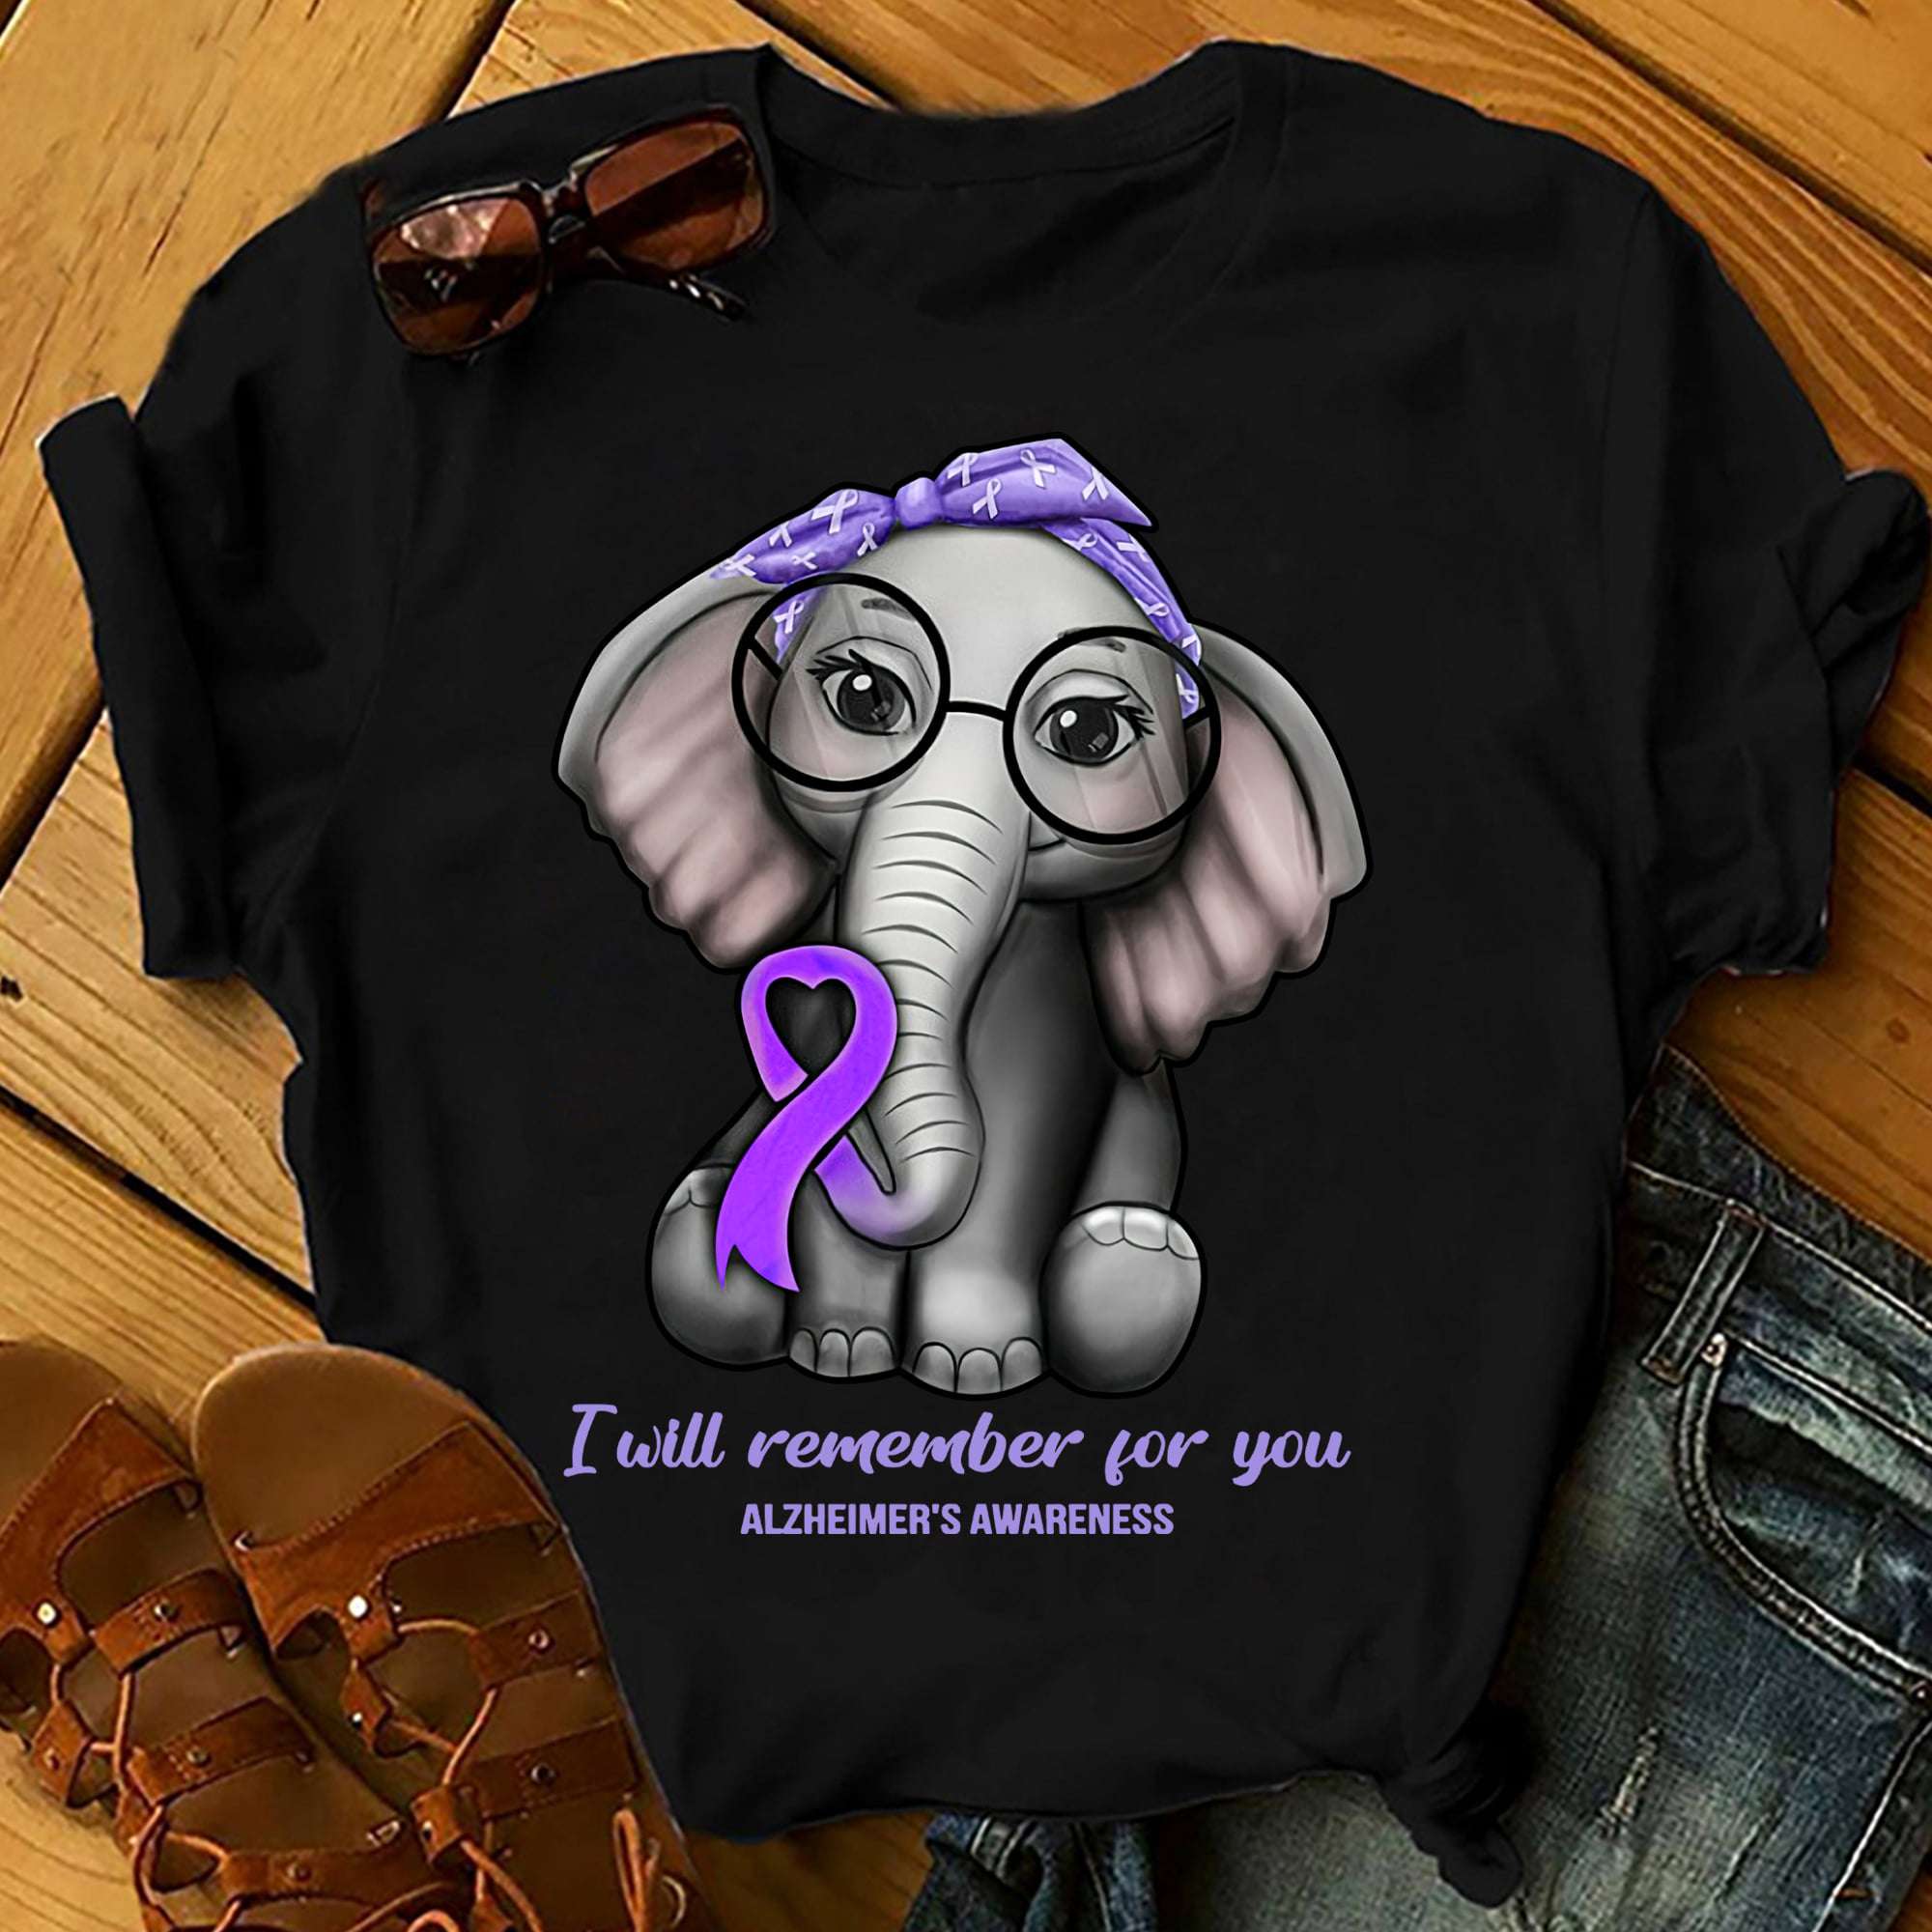 I will remember for you - Alzheimer's awareness, elephant alzheimer ...